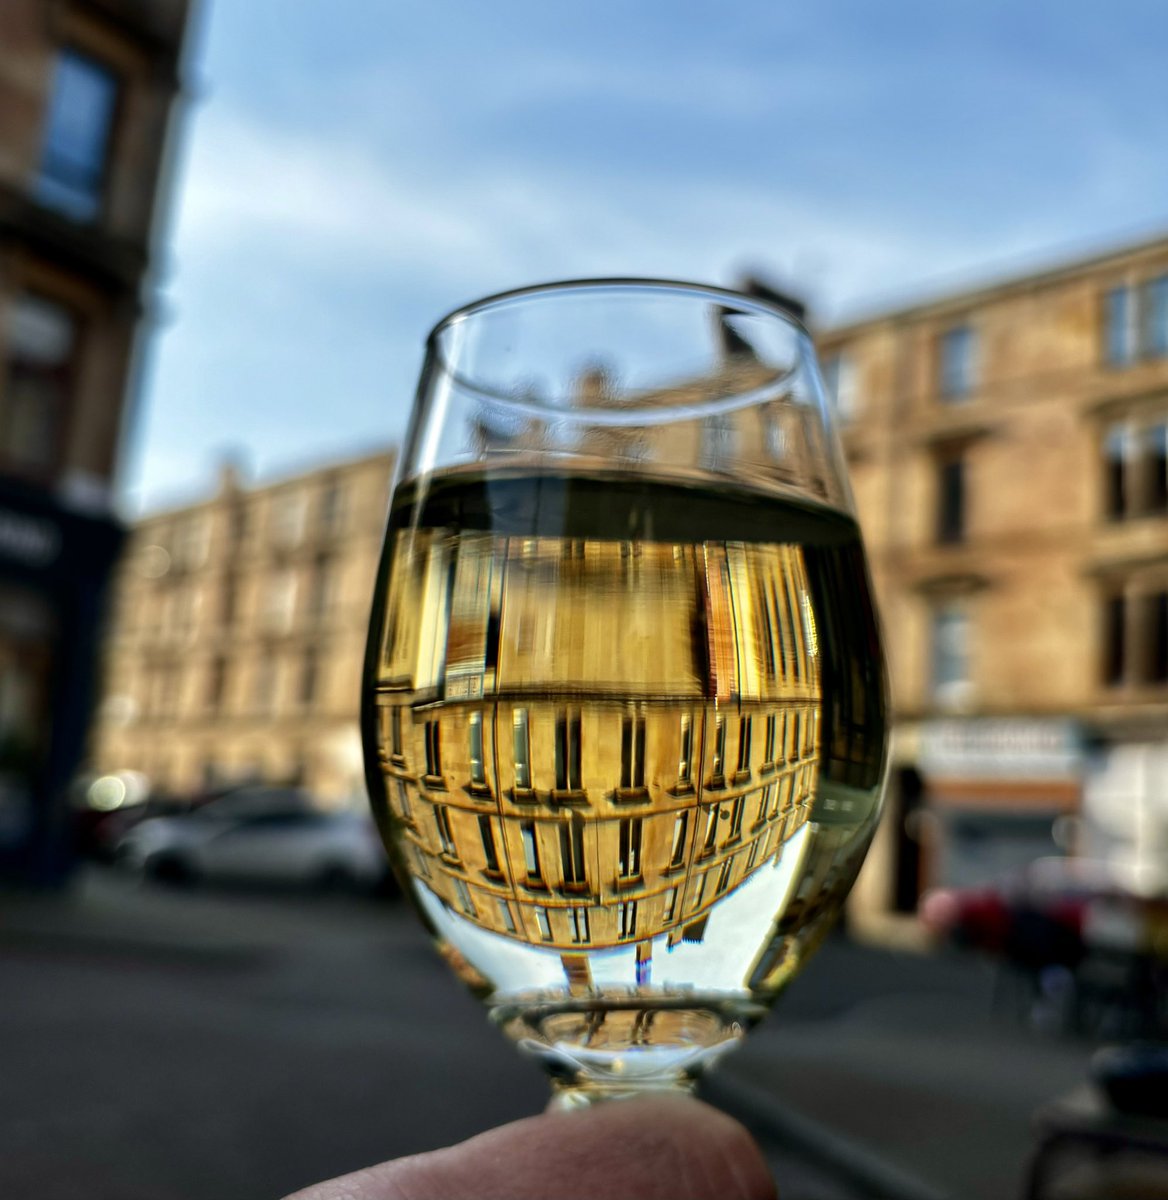 Glasgow tenement in a glass ☀️ #Glasgow